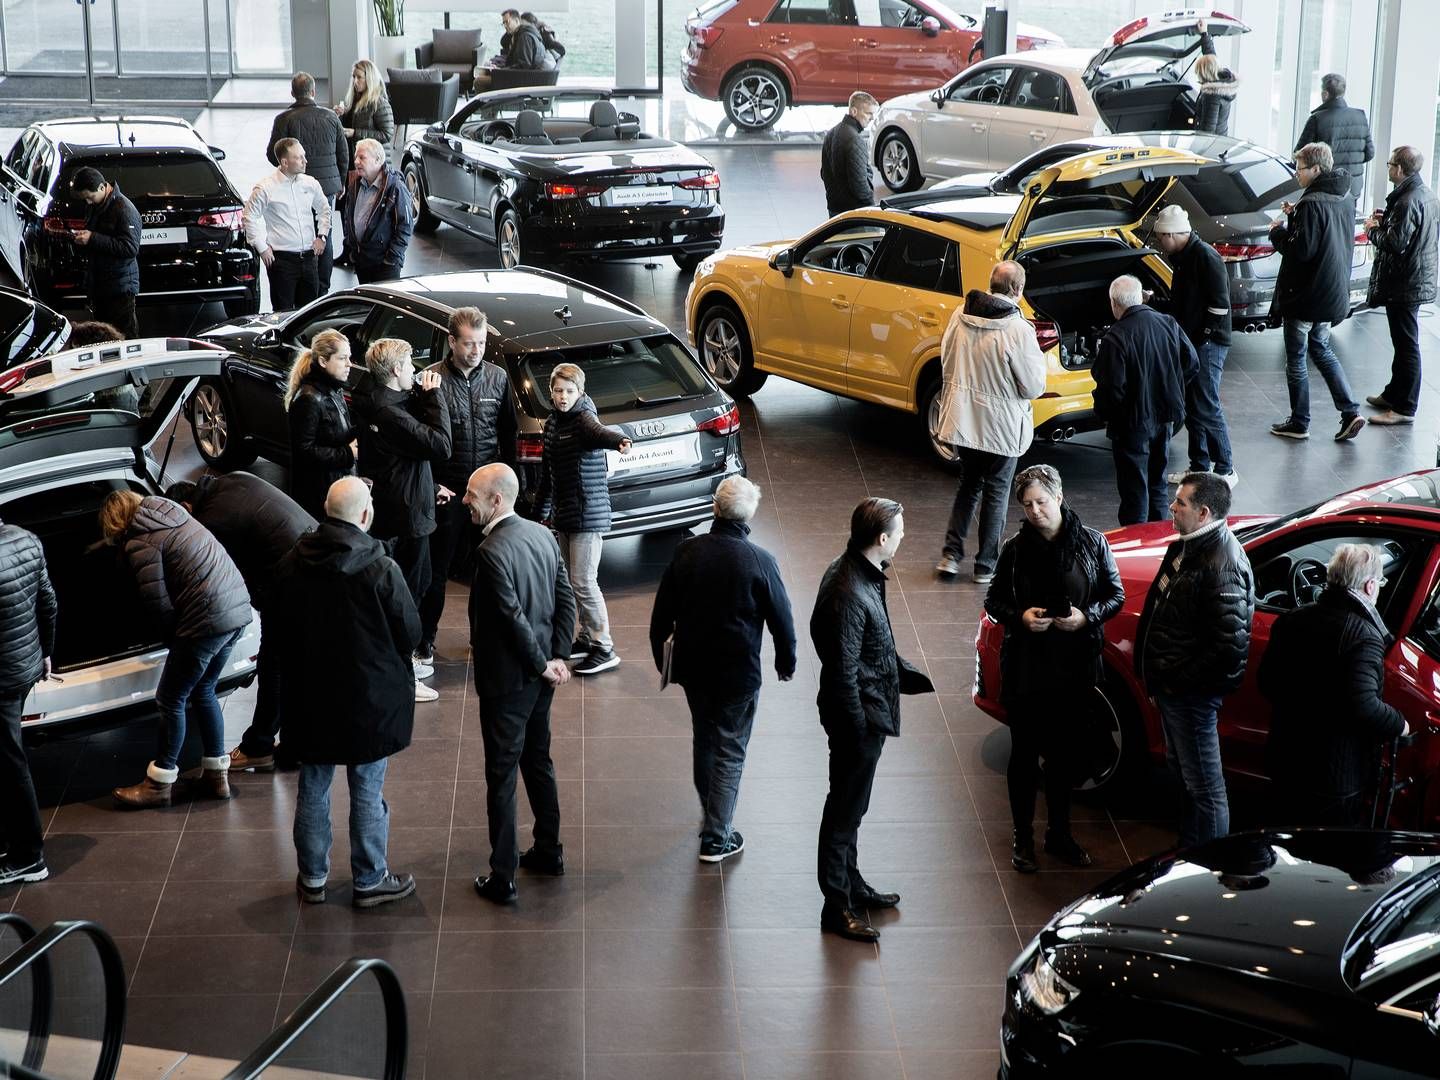 Mens danskerne shopper nye elbiler i stor stil, er luften gået ud af EU's elbilsalg. I januar var kun 1 ud af 10 solgte biler en elbil. | Foto: Peter Hove Olesen/Politiken/Ritzau Scanpix